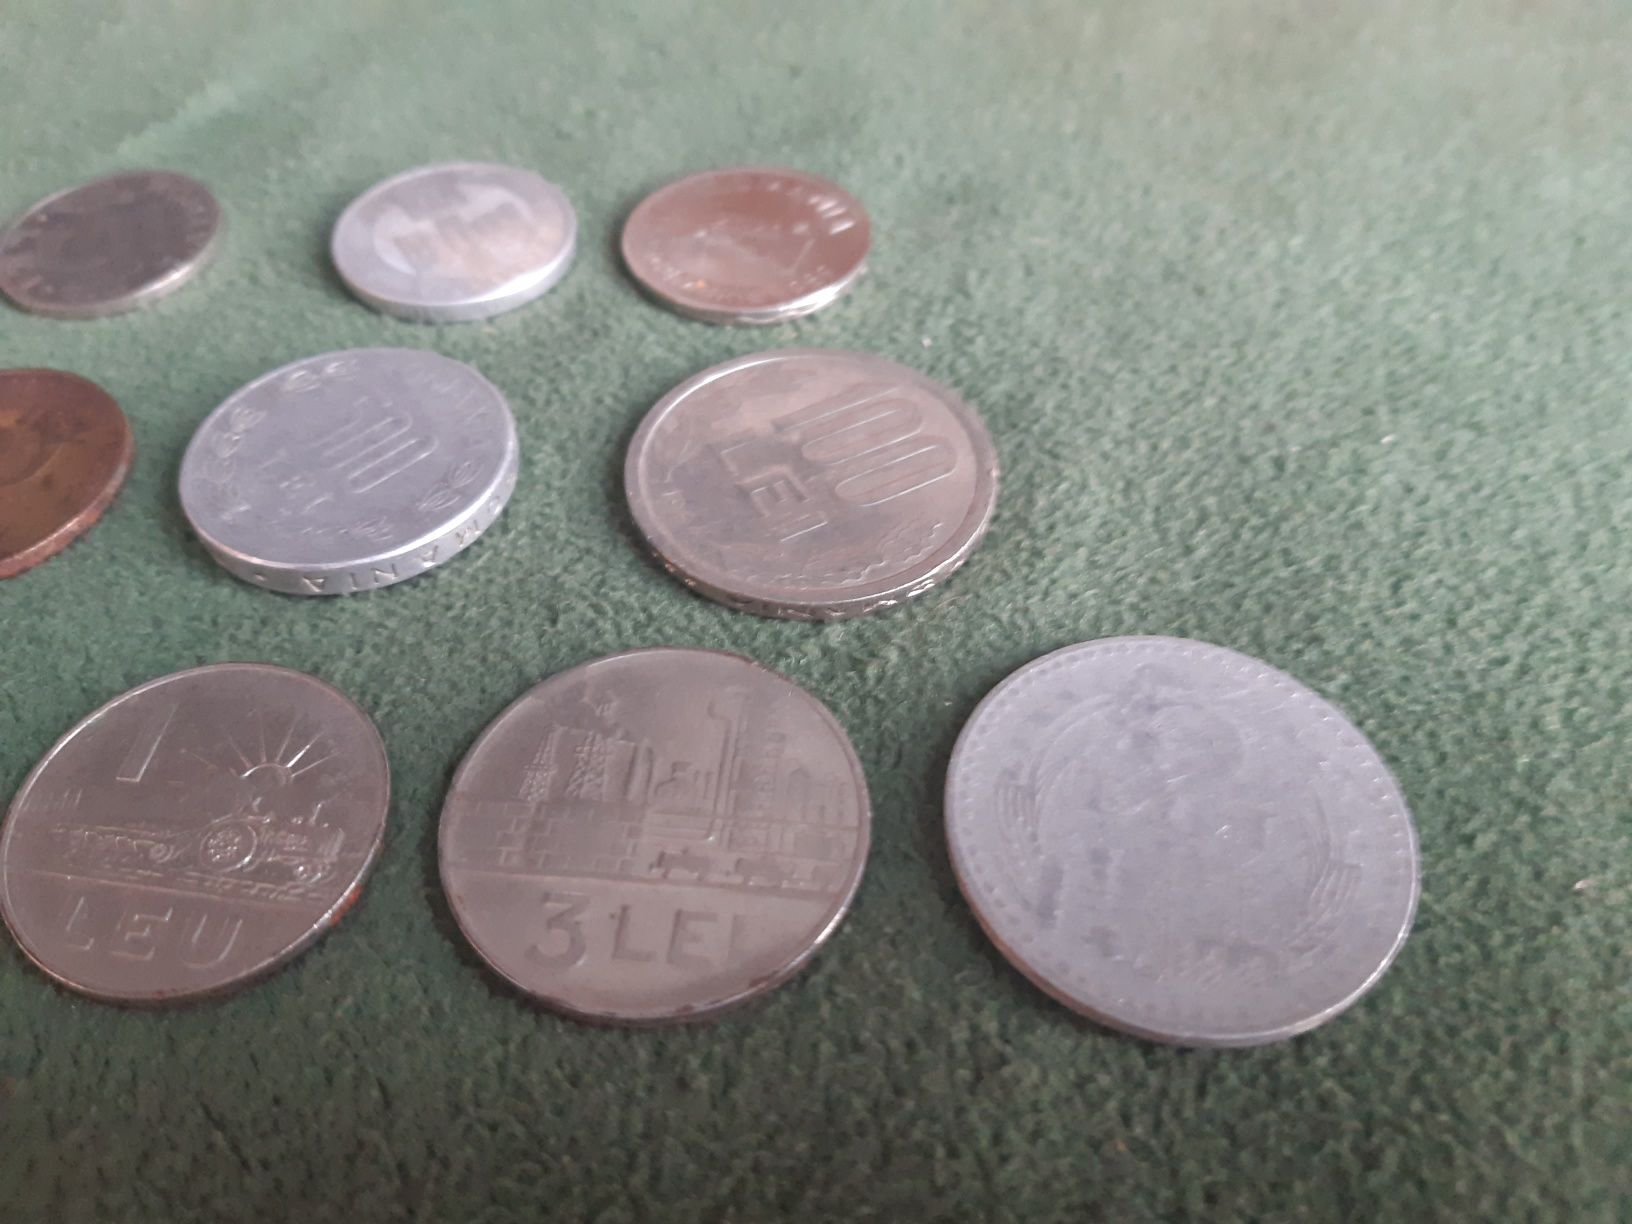 Lot 18 Monede românești 1960 - 2004